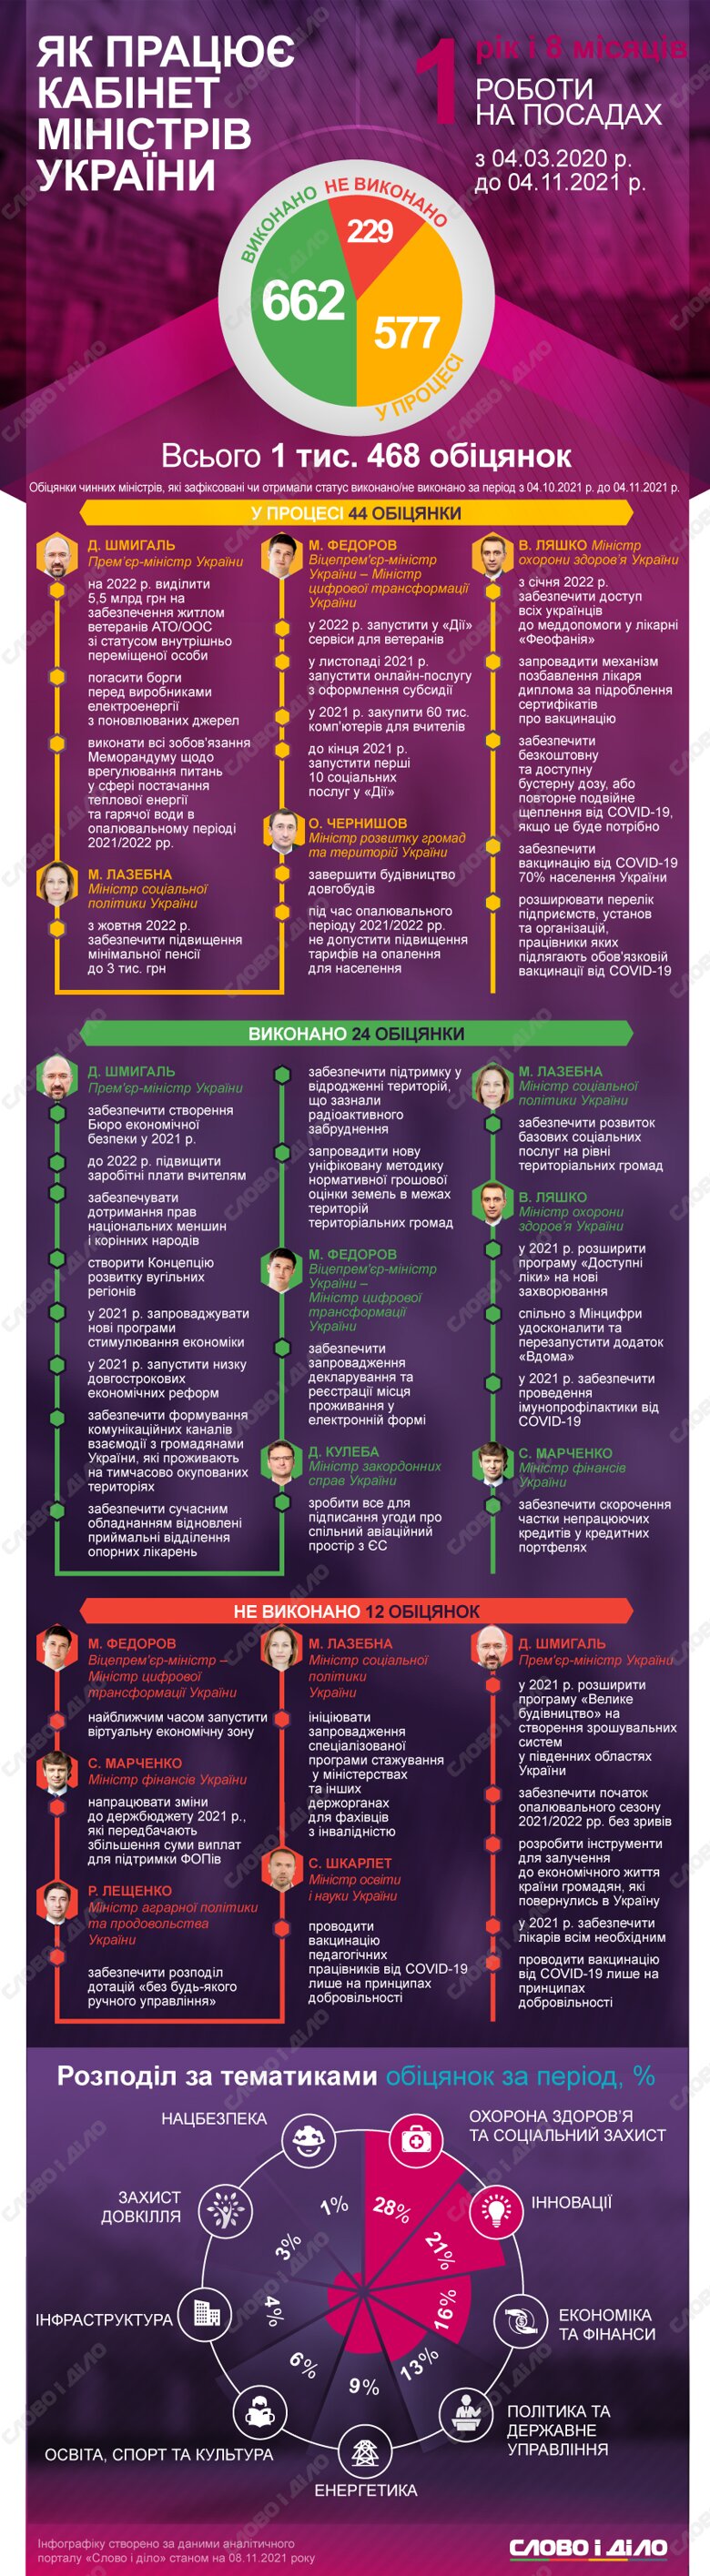 Уряд Дениса Шмигаля за місяць виконав 24 обіцянки, провалив – 12. Крім того, міністри дали 44 нові обіцянки.